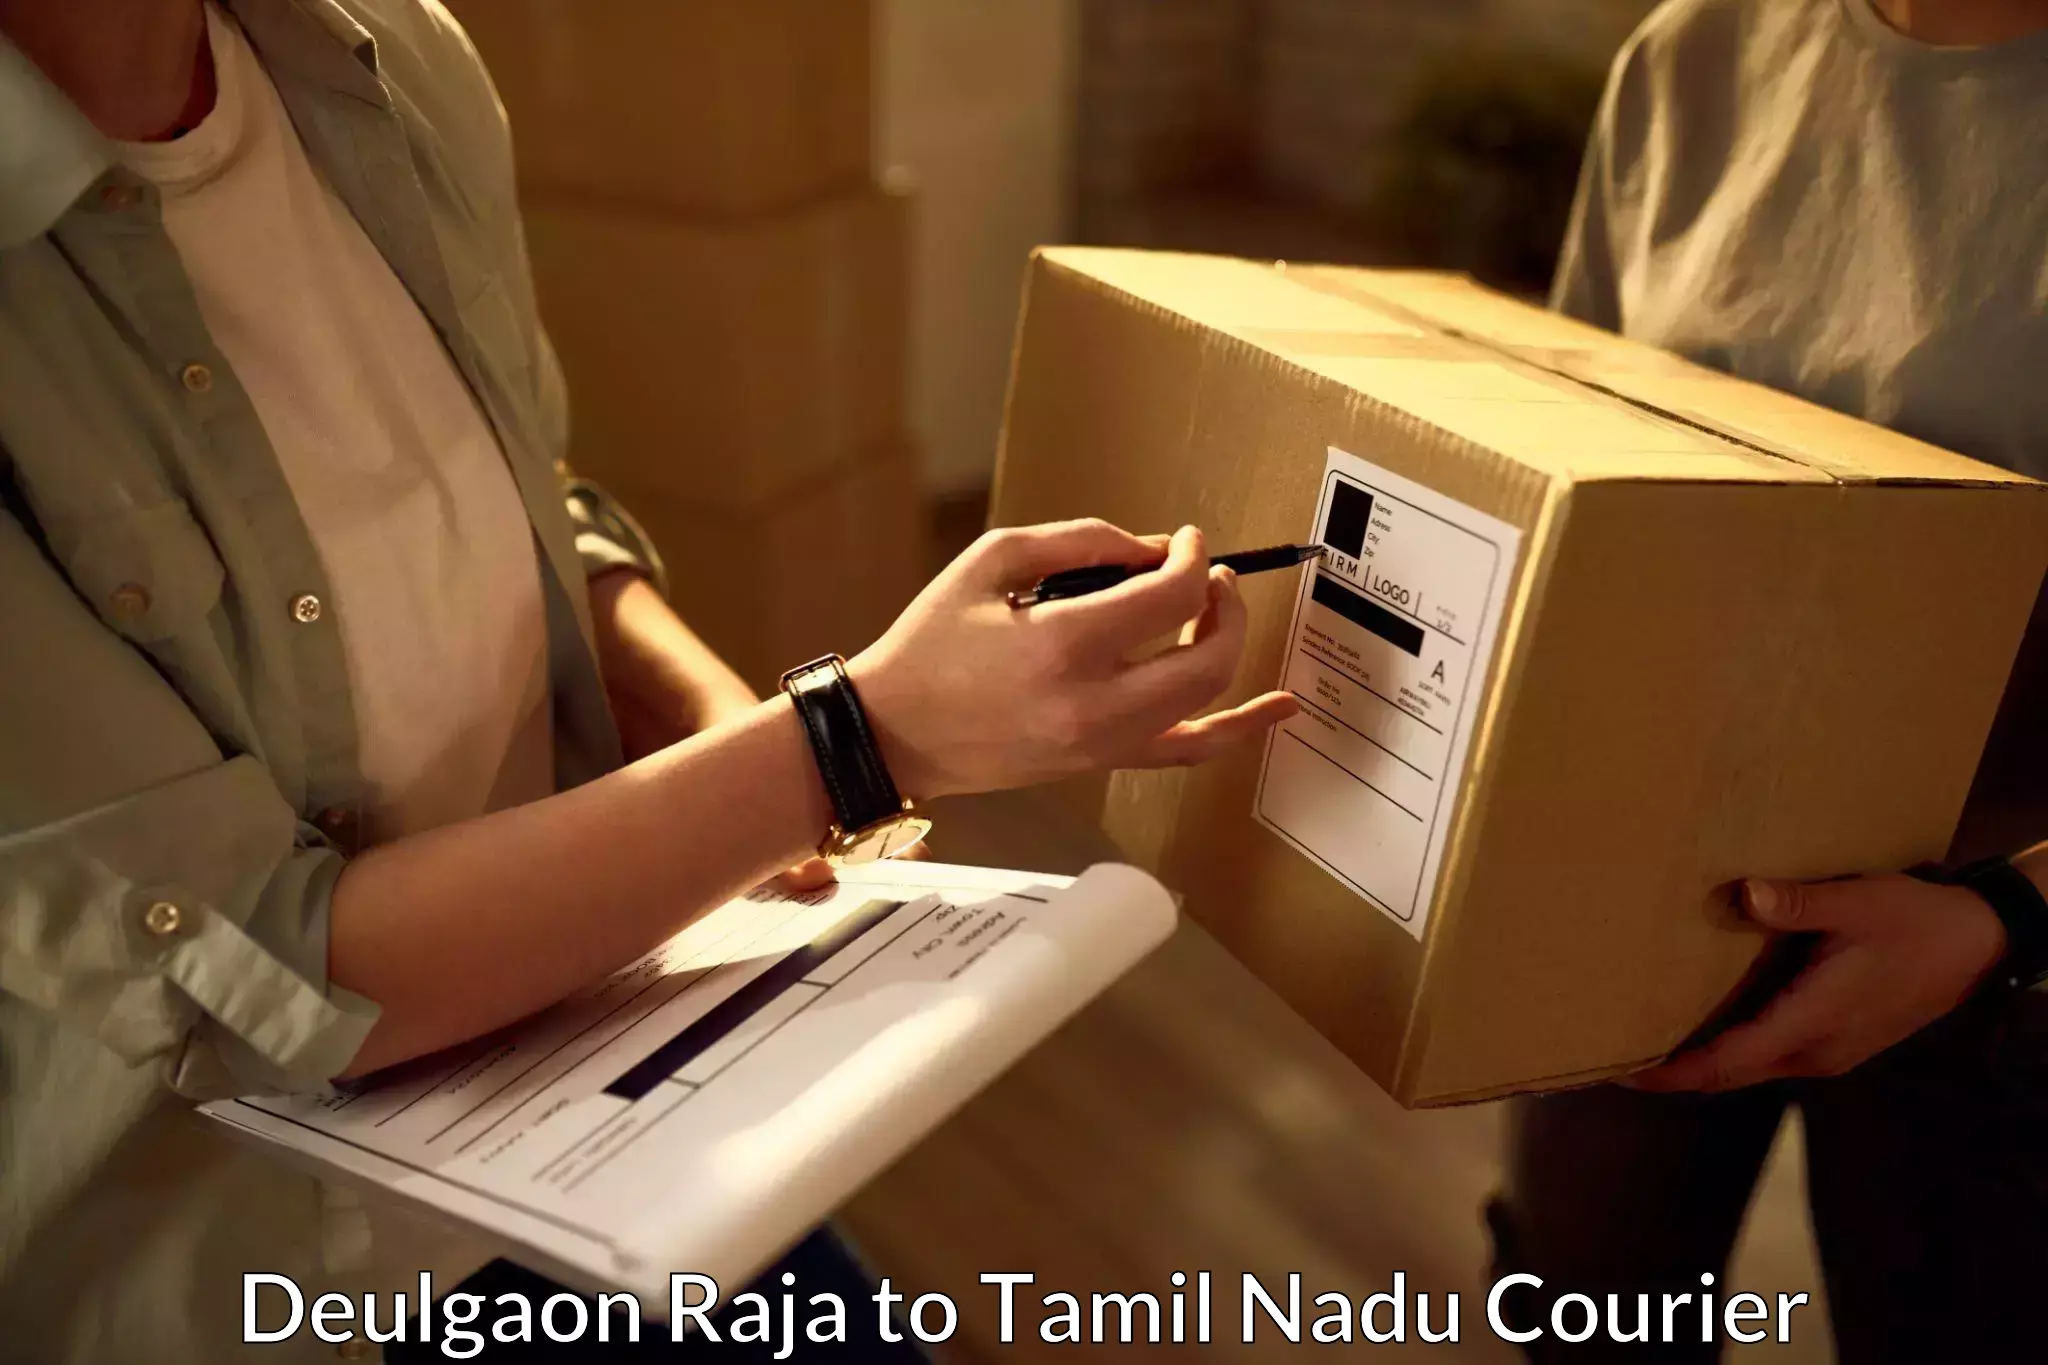 Multi-city courier Deulgaon Raja to Tamil Nadu